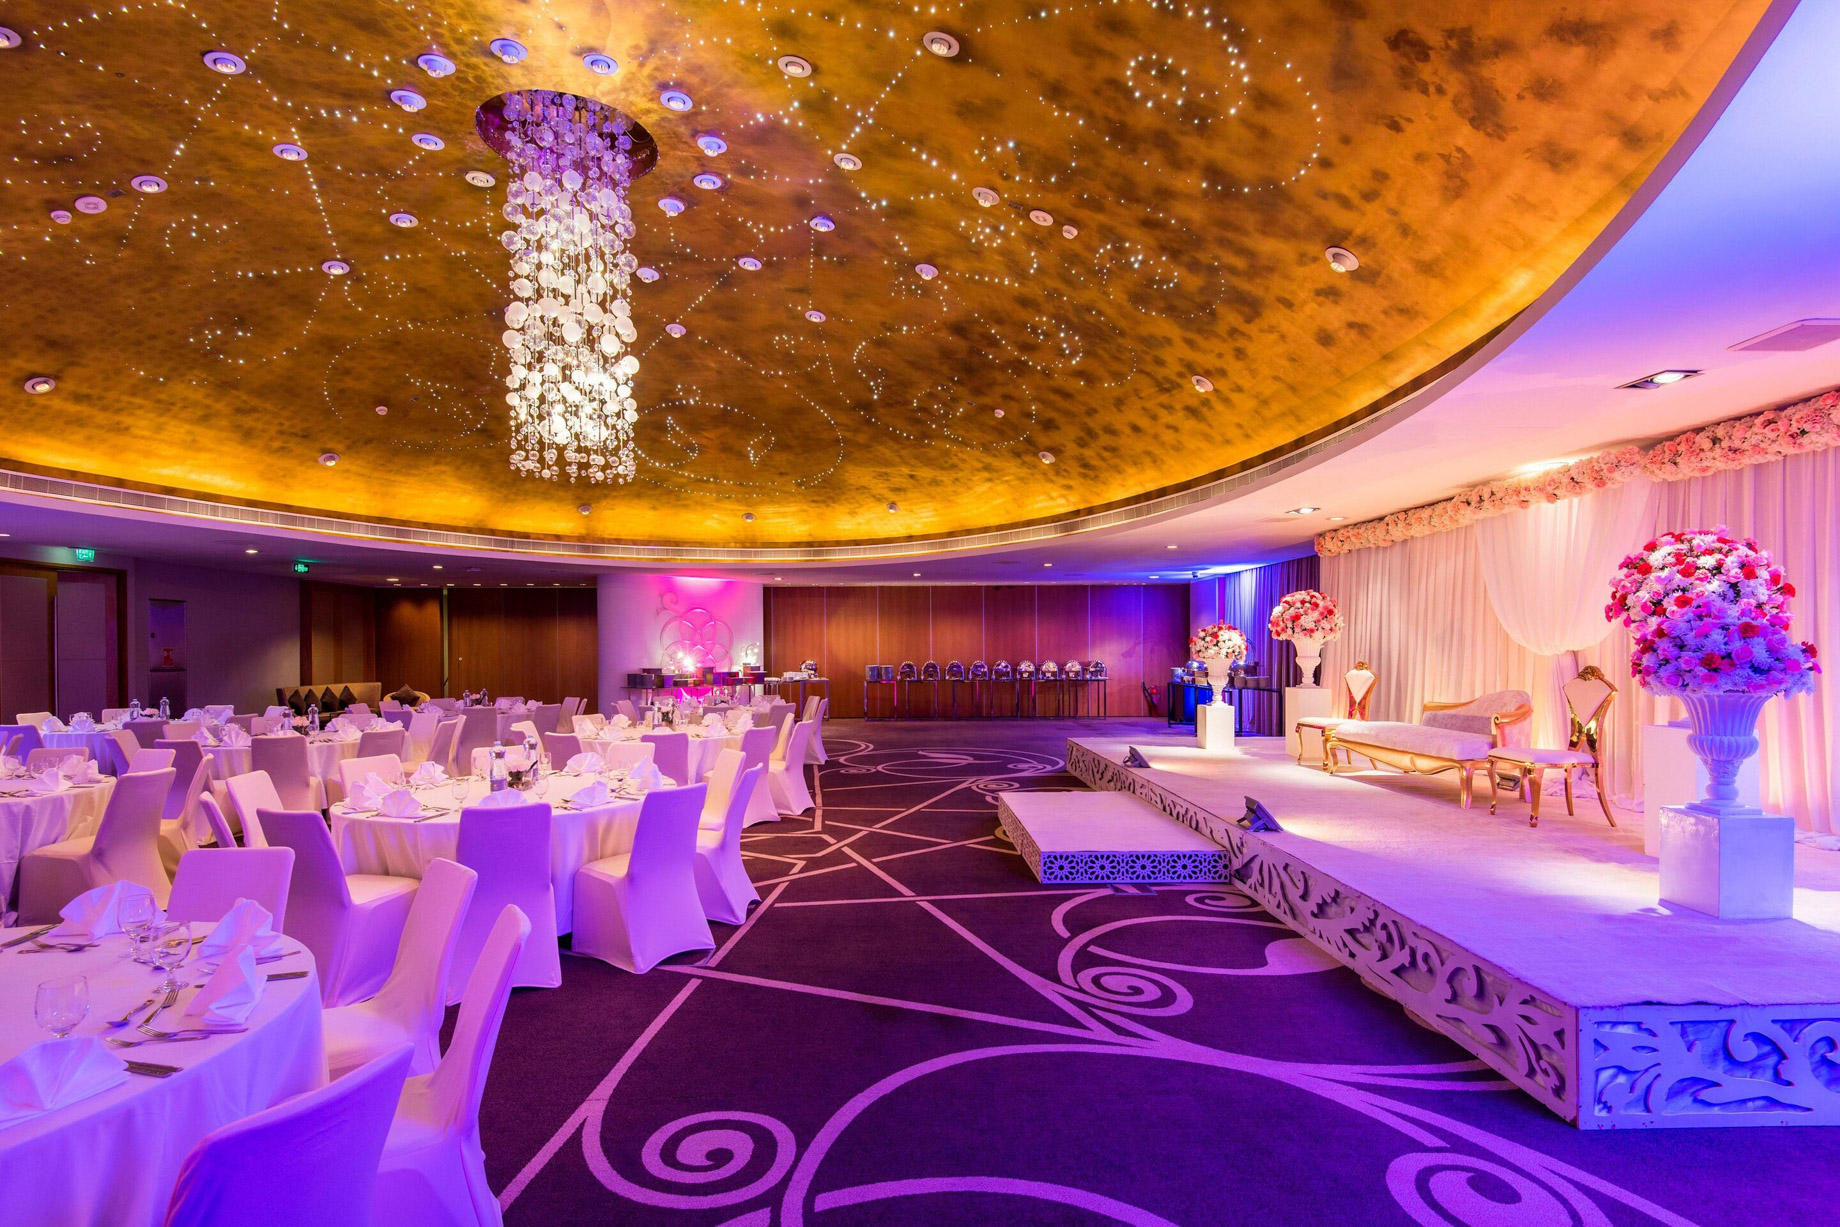 W Doha Hotel – Doha, Qatar – Wedding Banquet Room Setup